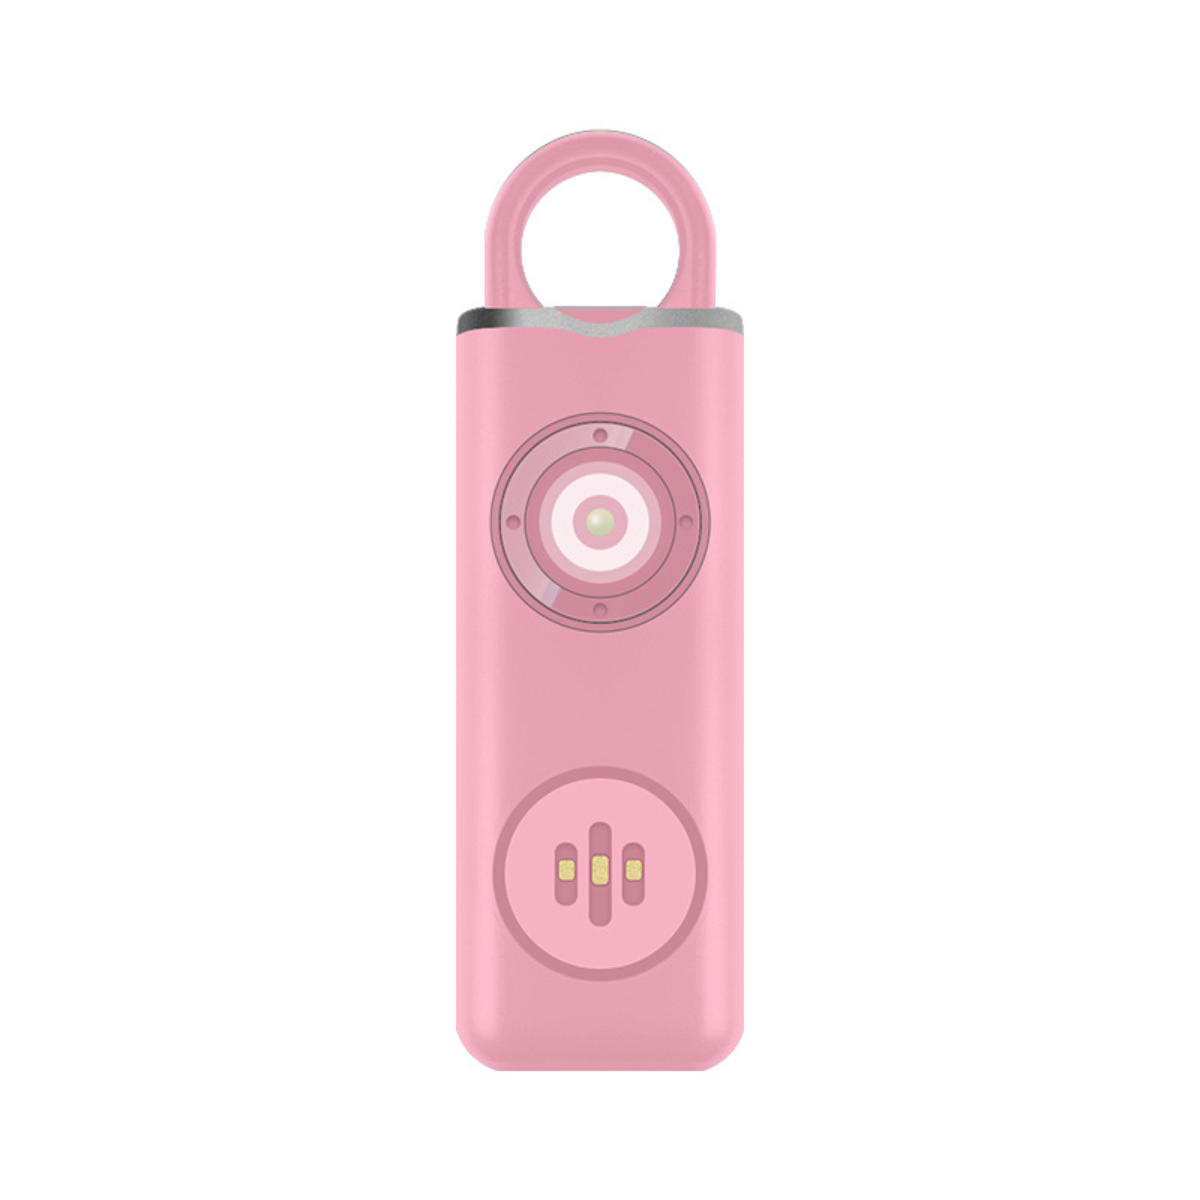 - Pinker wiederaufladbarer Alarm Rosa Schlüsselanhänger Body LACAMAX Alarme, LED-beleuchtet, Zyklus